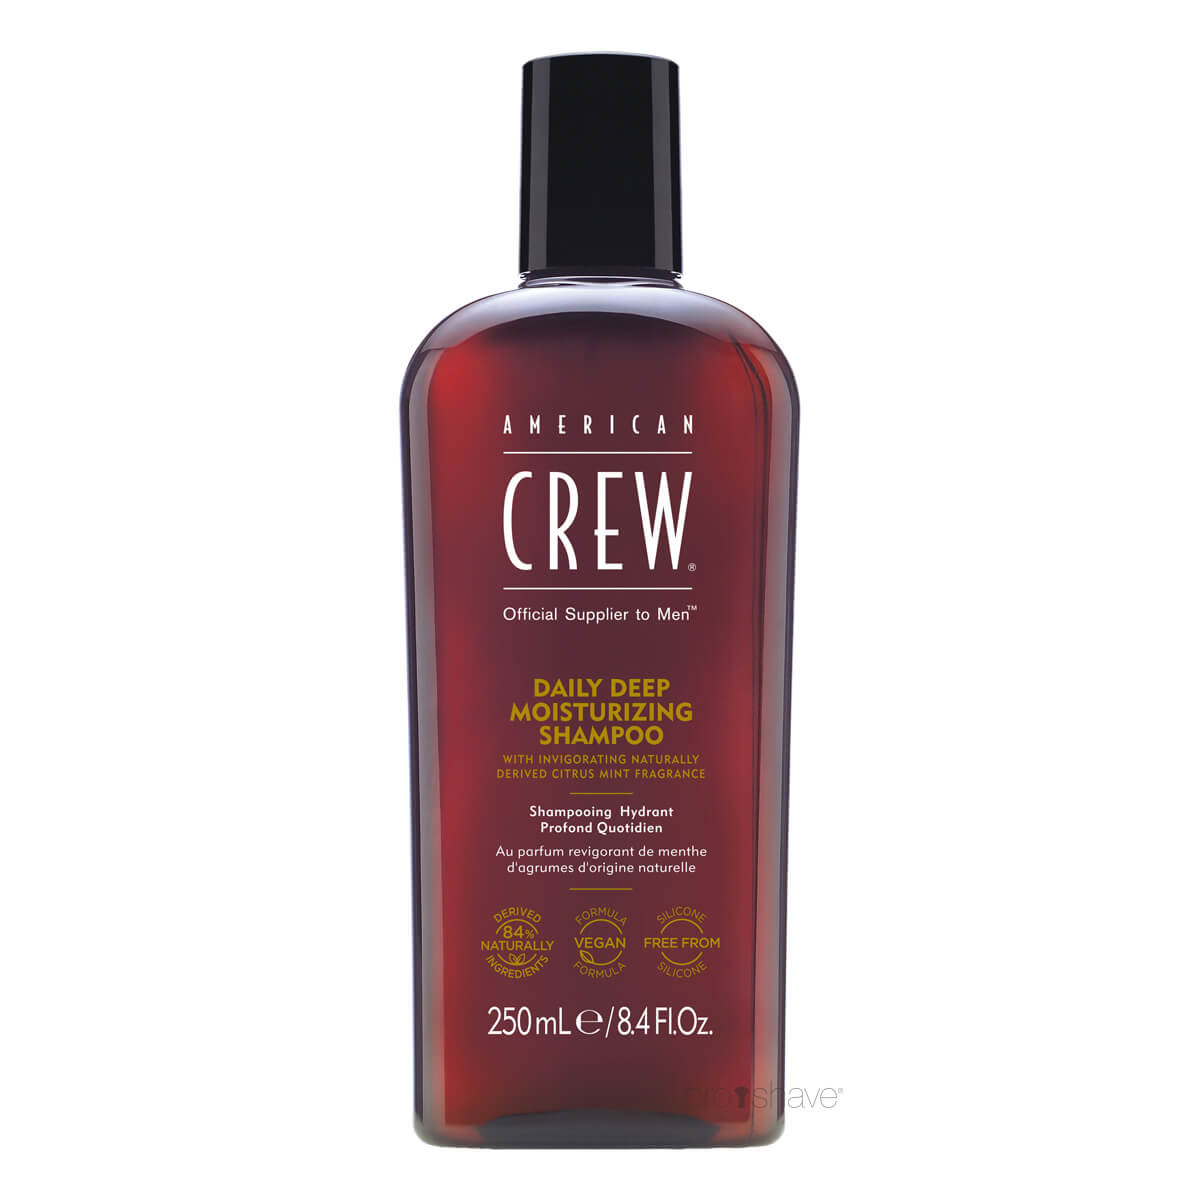 Billede af American Crew Daily Deep Moisturizing Shampoo, 250 ml.